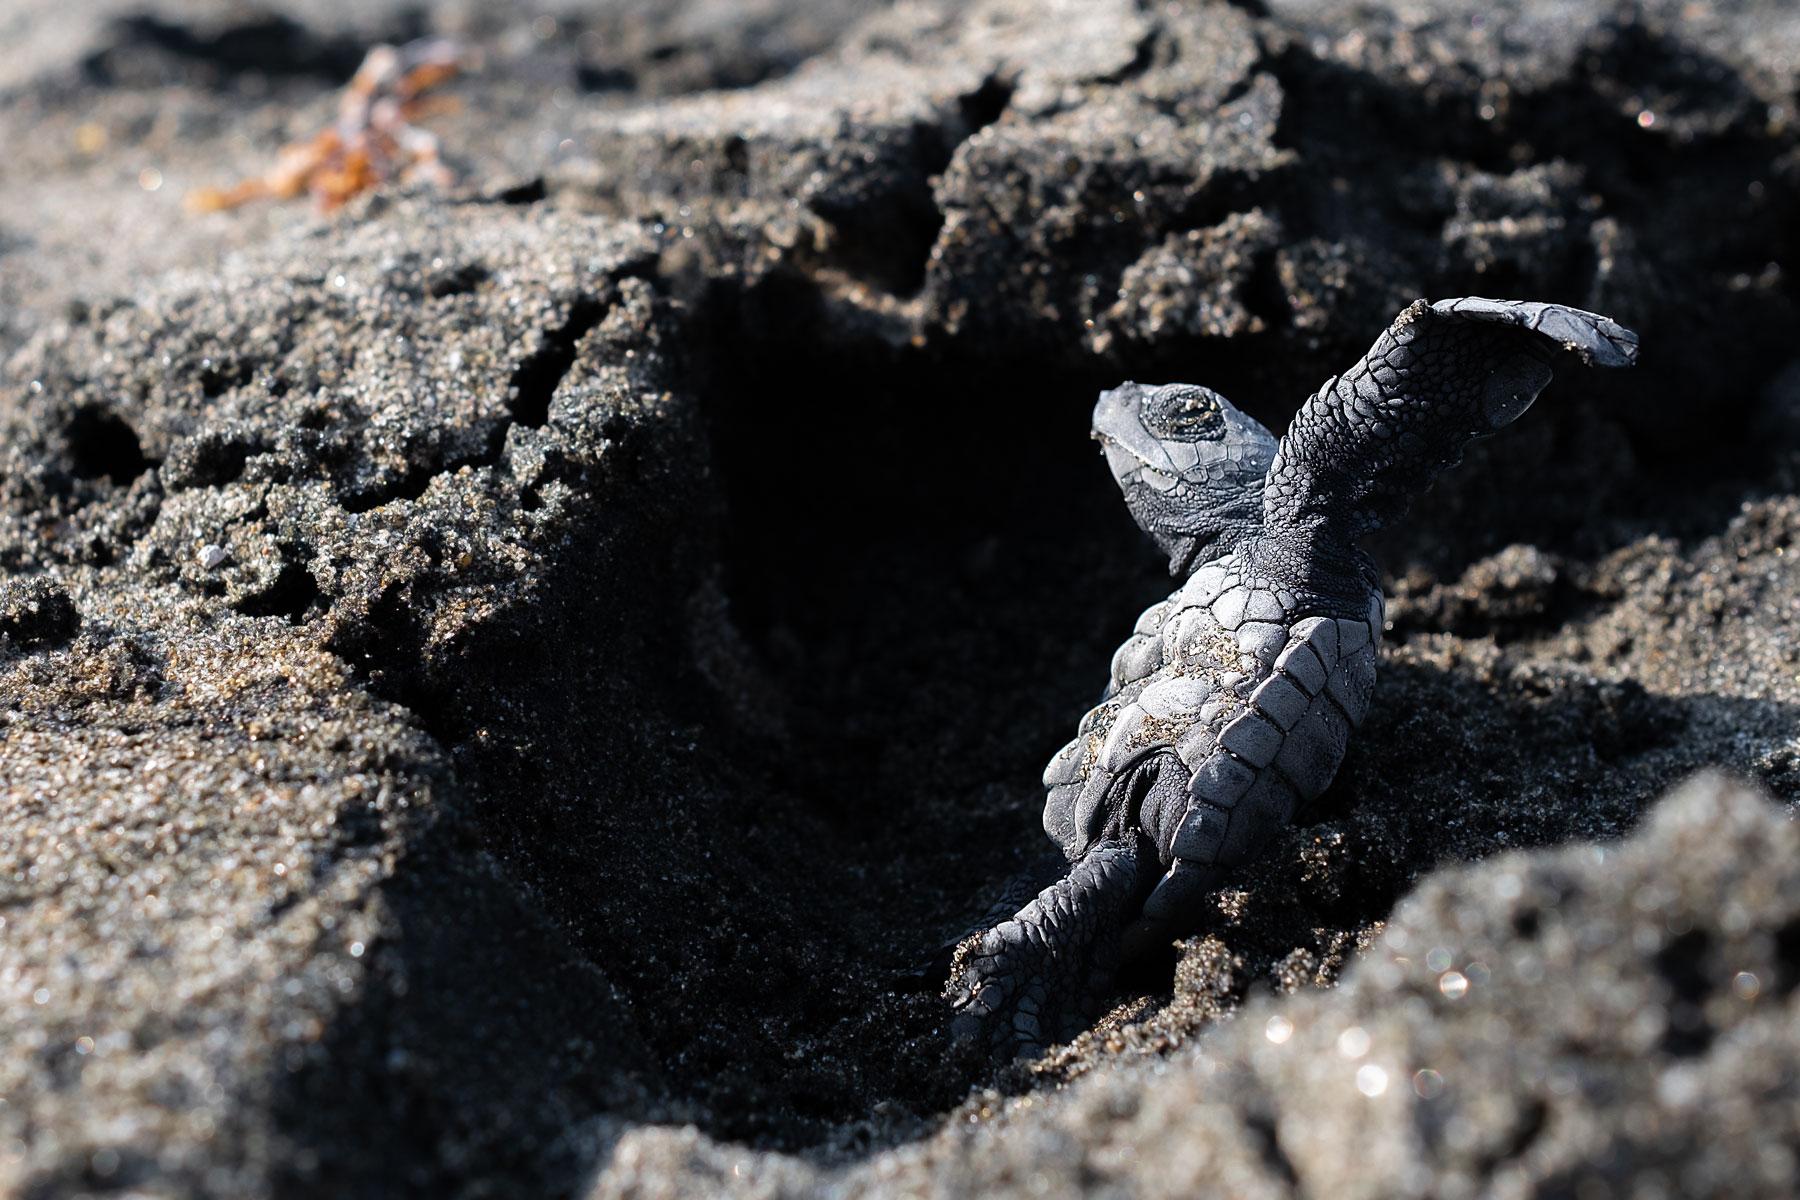 Reportage -   The birth of turtles  | Puerto Rico, Ecuador |   More, click here   